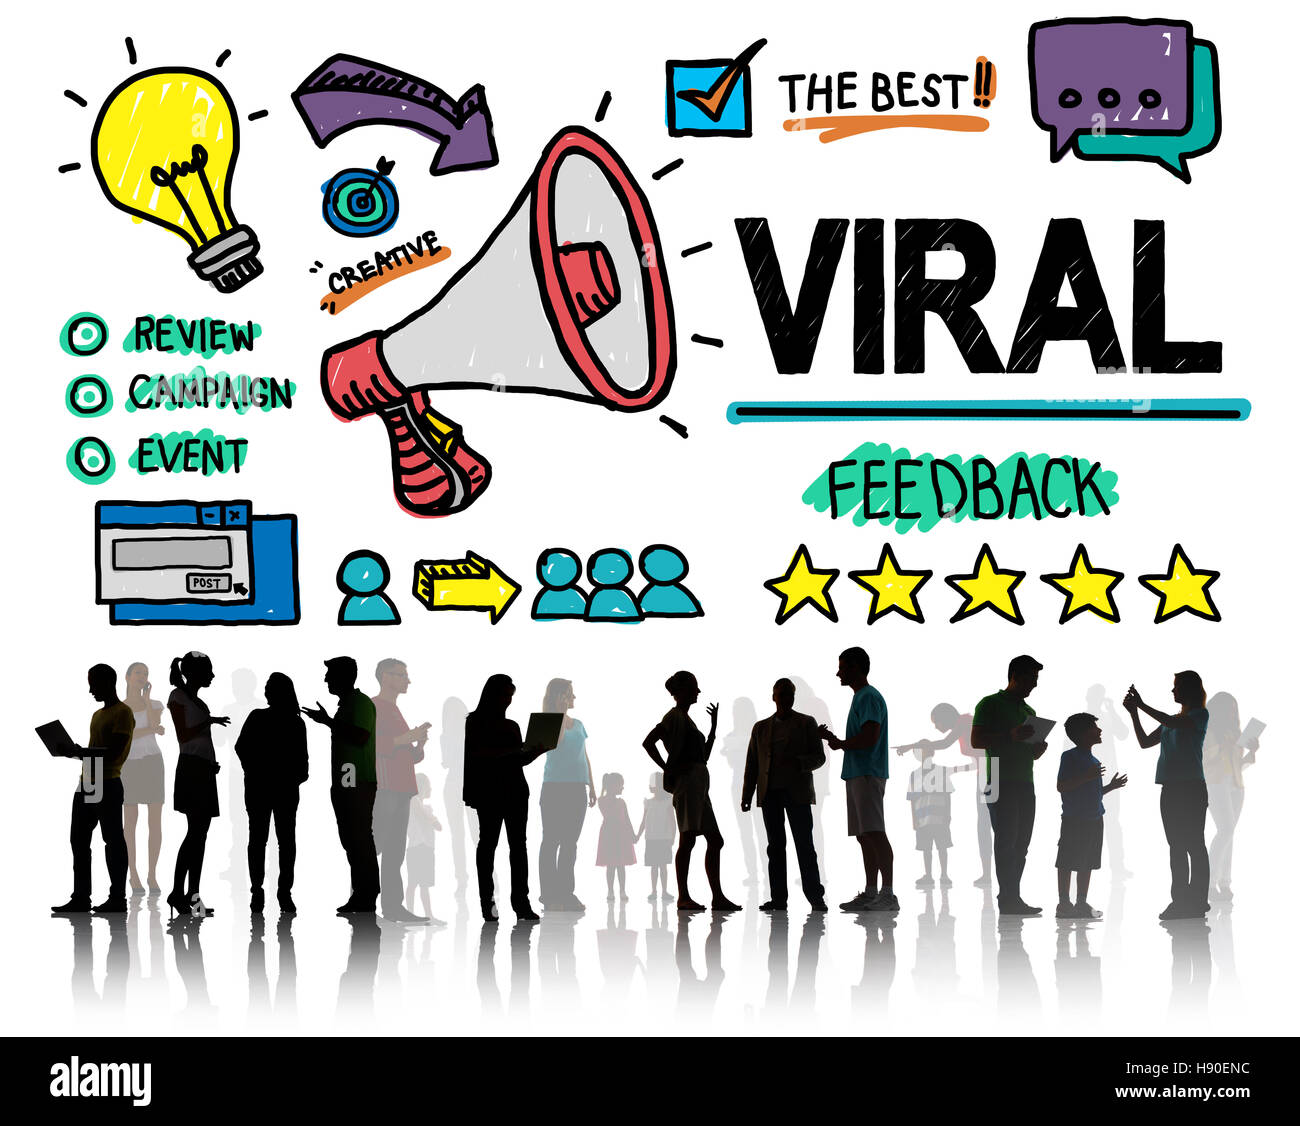 Virale Marketing verbreiten Review Feedback Veranstaltungskonzept Stockfoto